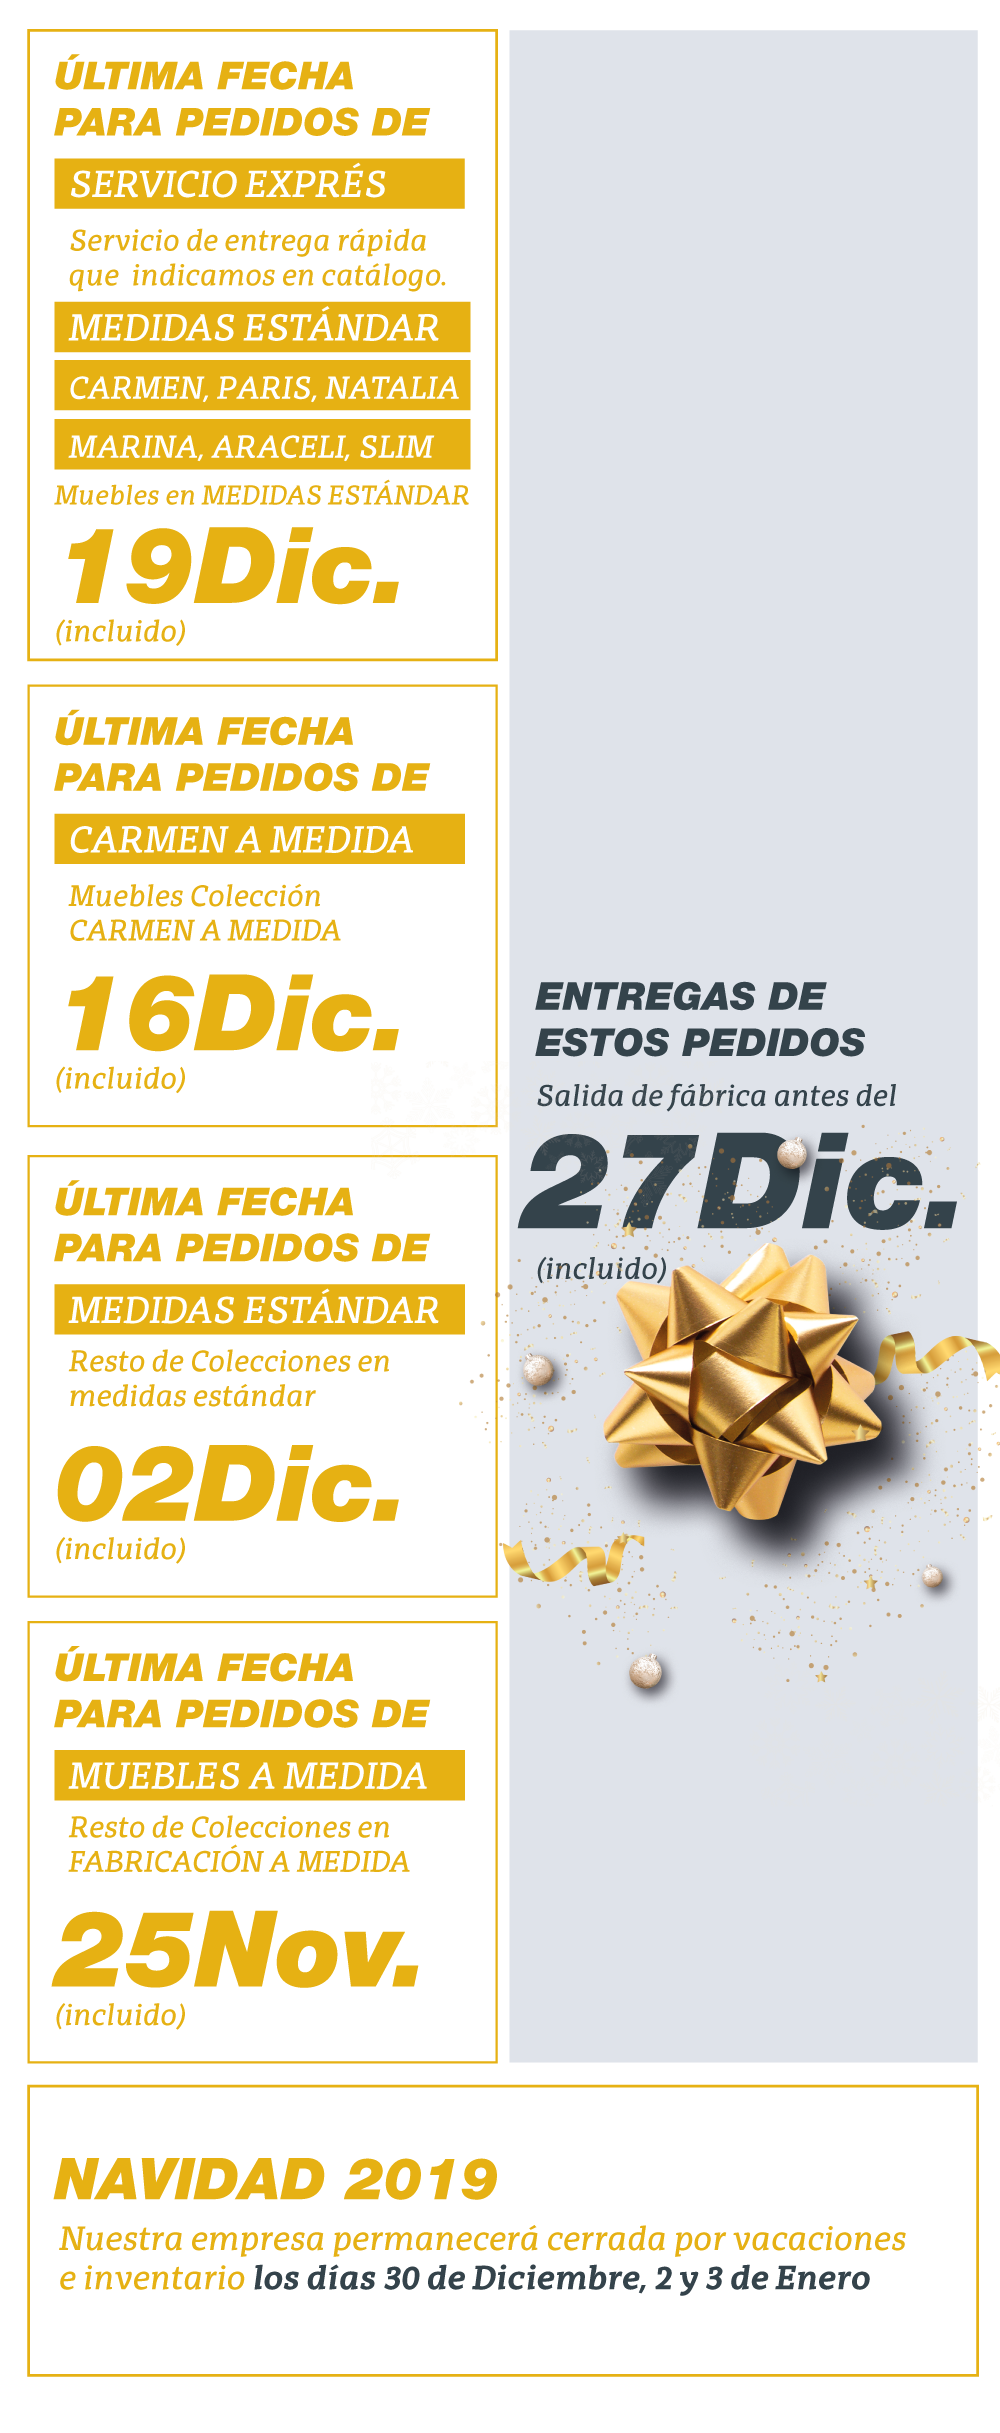 avila-dos-entregas-navidad-2019